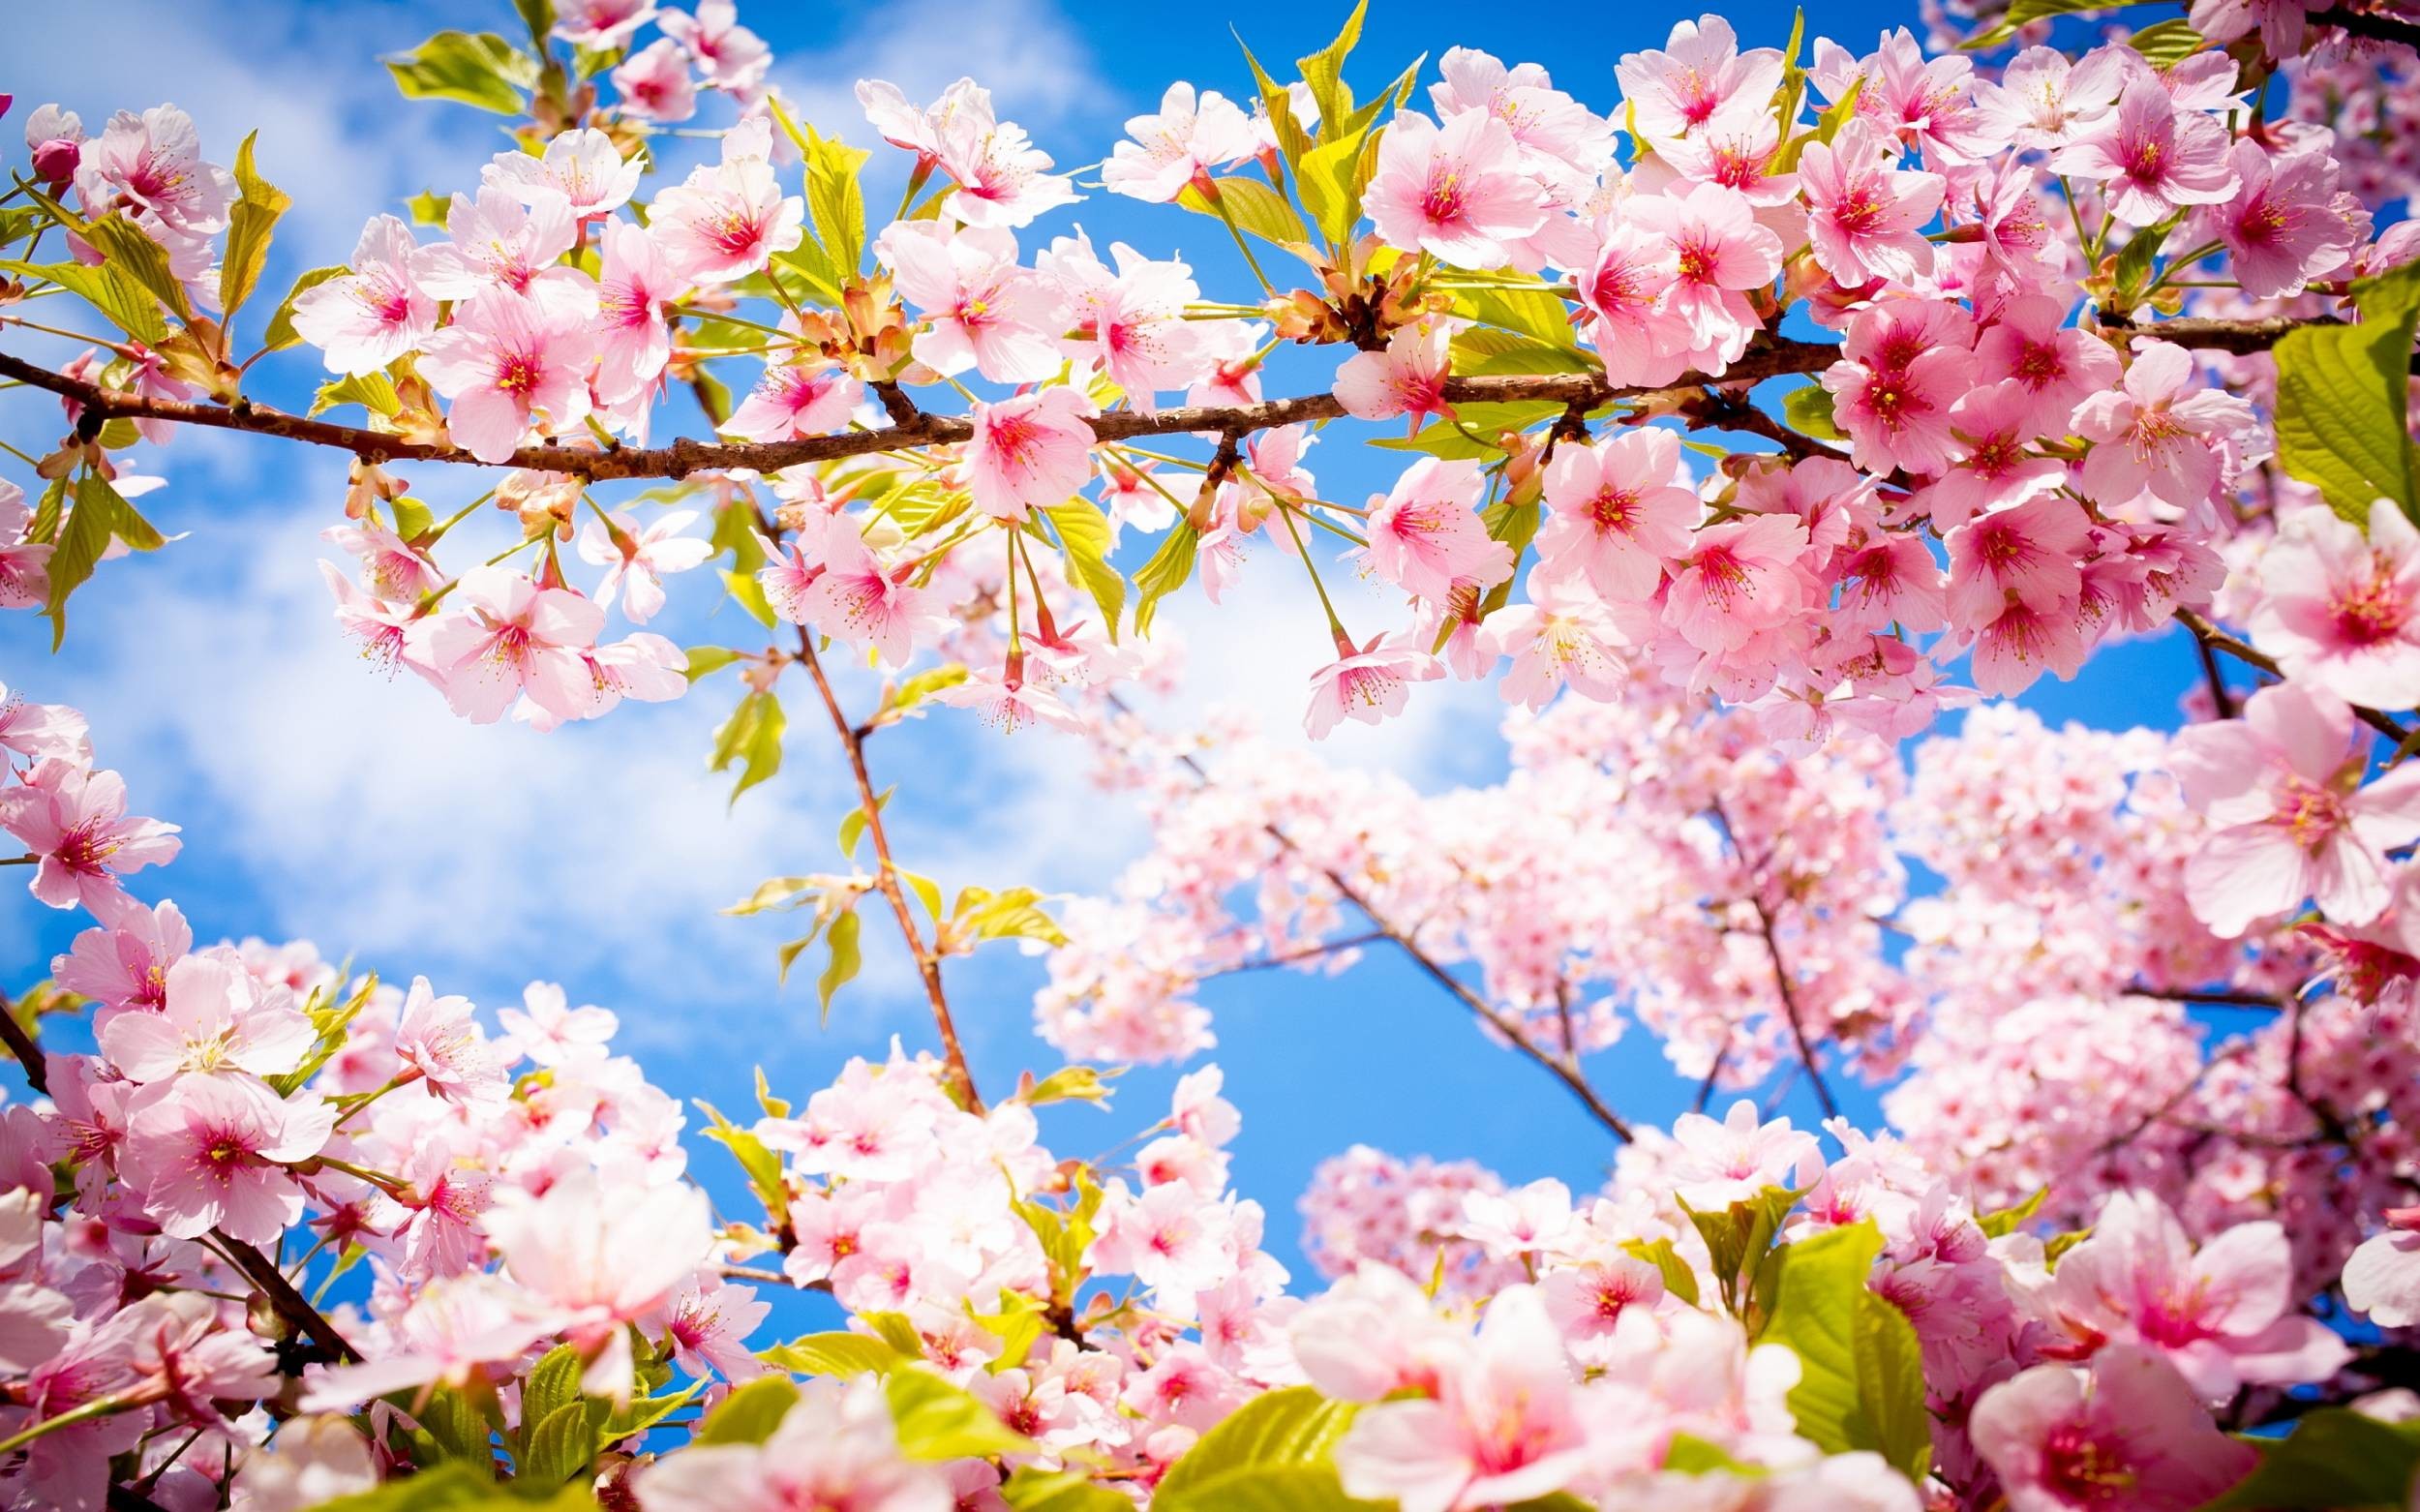 Chùm thơ mùa xuân mang sắc hoa, thơm trái, ấm áp tình yêu. Những câu thơ tinh tế và dễ thương sẽ đưa bạn đến một mùa xuân đầy ắp những mảnh ghép cực kỳ lãng mạn và đáng yêu.